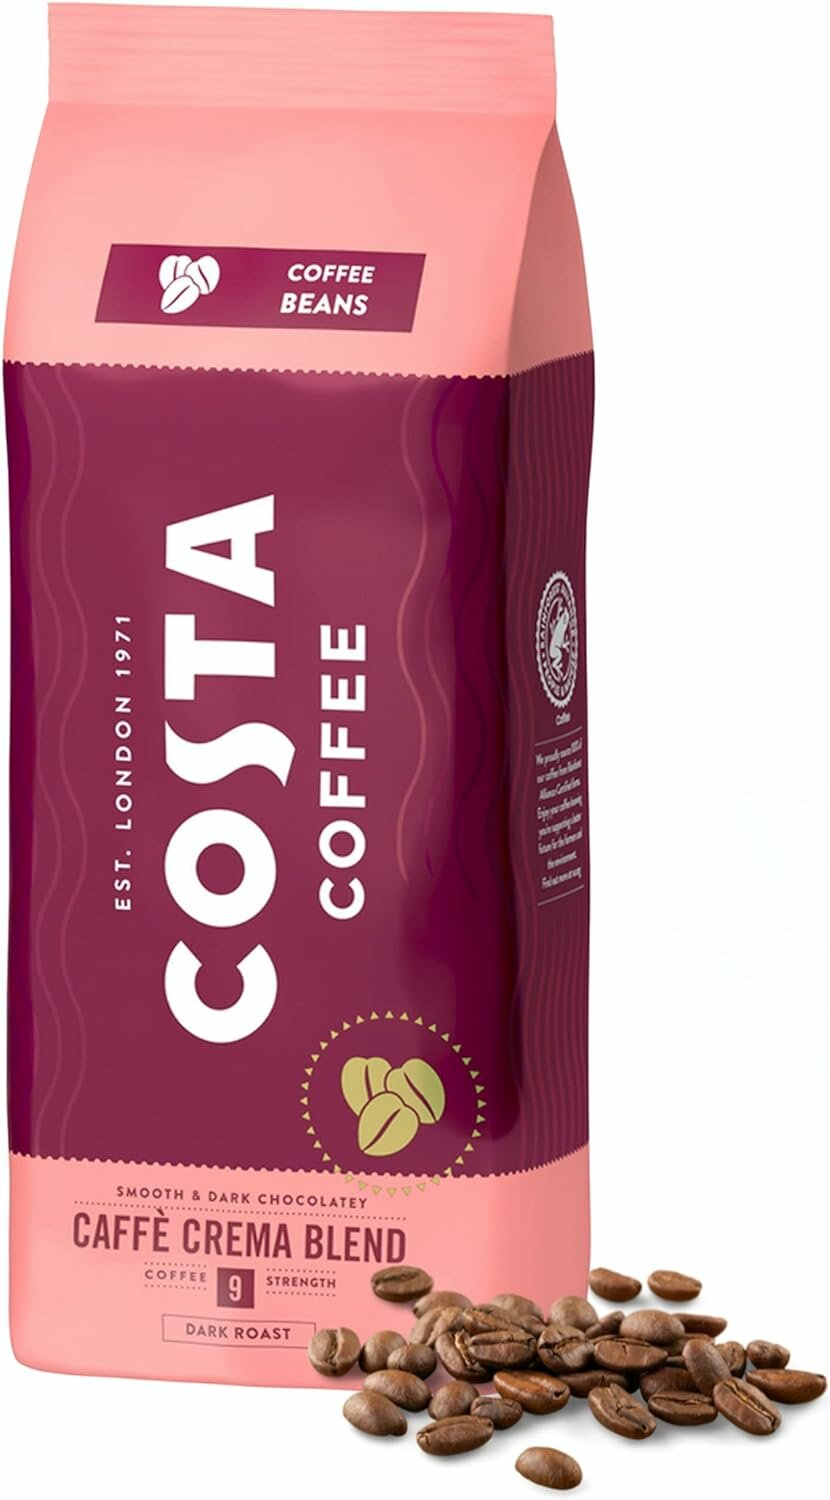 Кофе в зернах Costa Coffee Crema Blend 9 1 кг